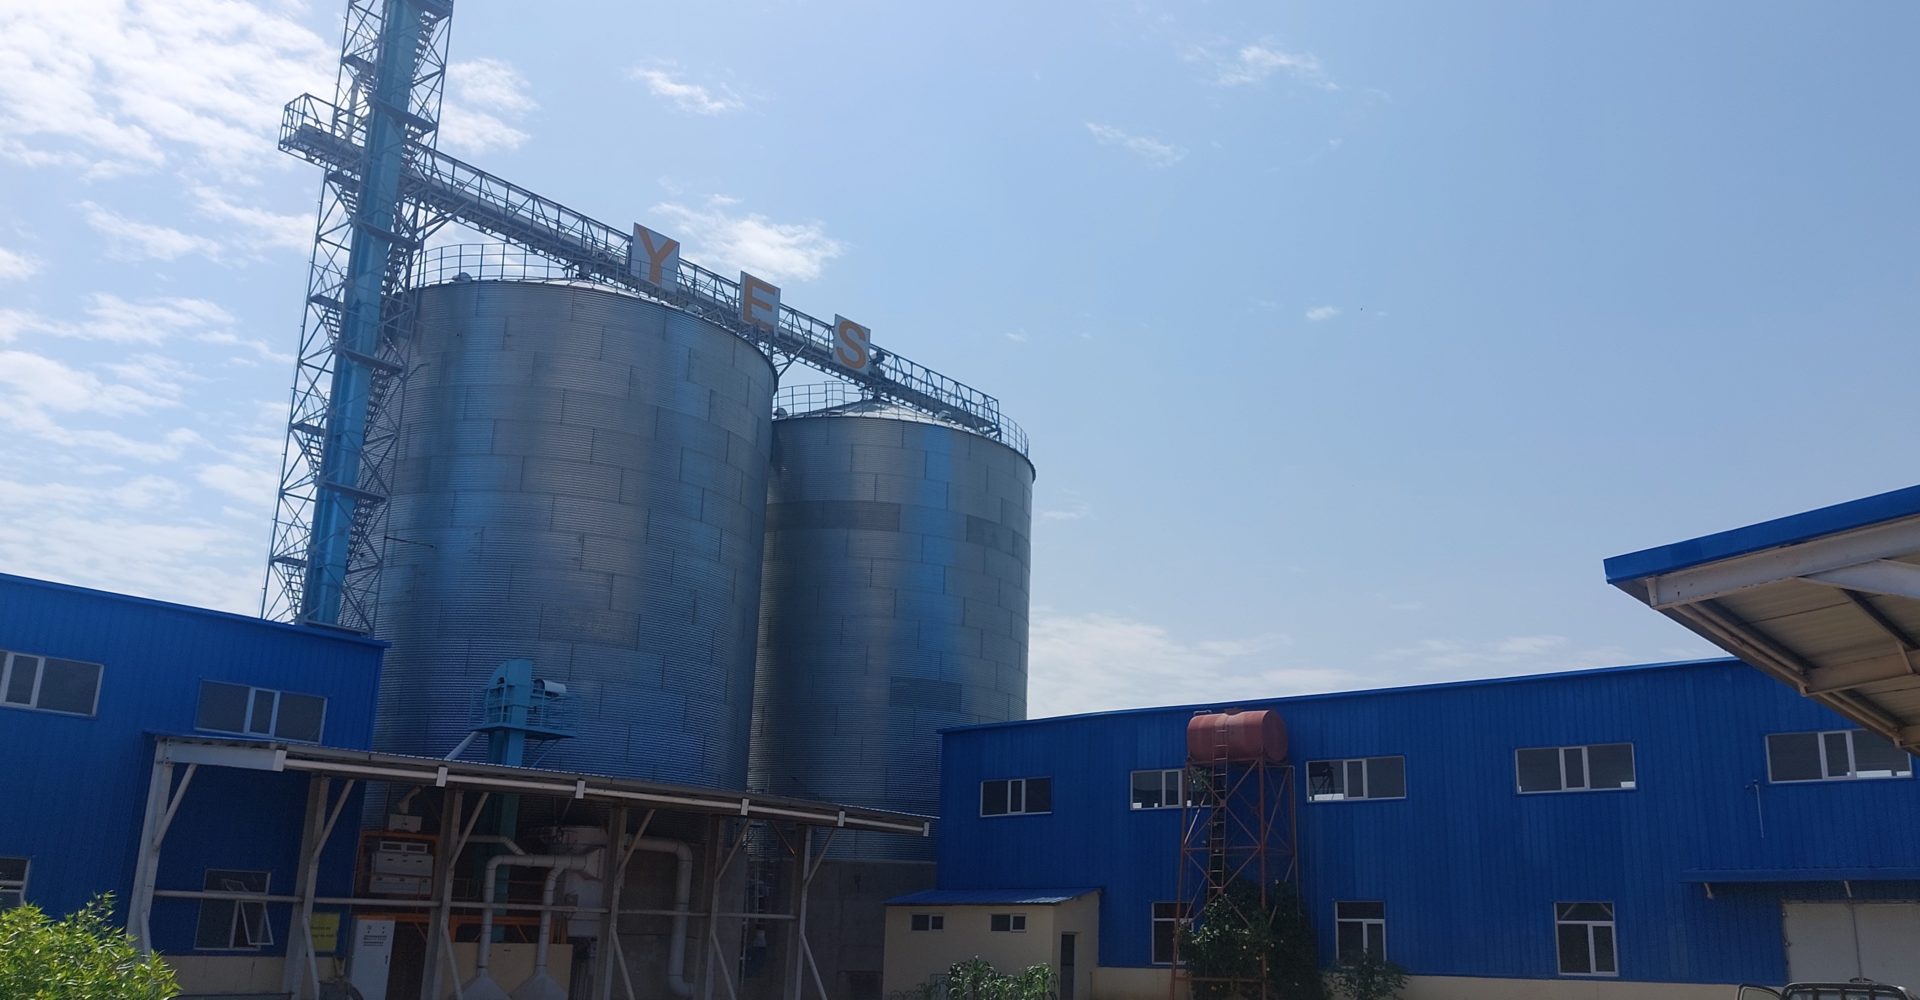 Le gouvernement annonce la fermeture des usines de la société agroalimentaire Cpl 1